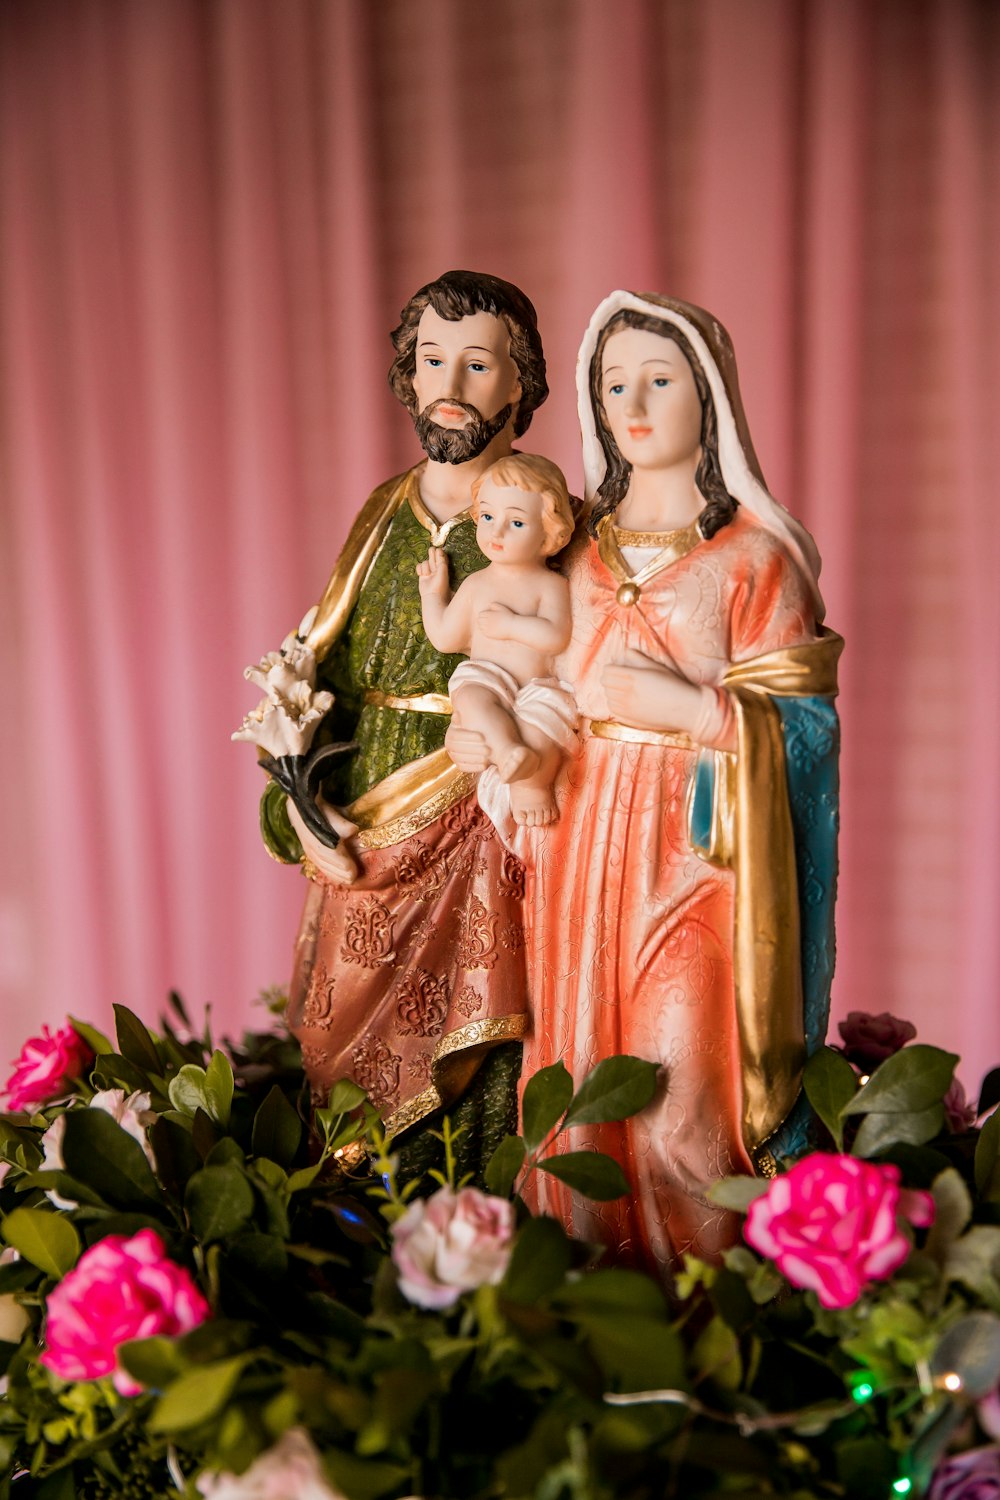 Figurine de la Vierge Marie sur textile floral rouge et vert